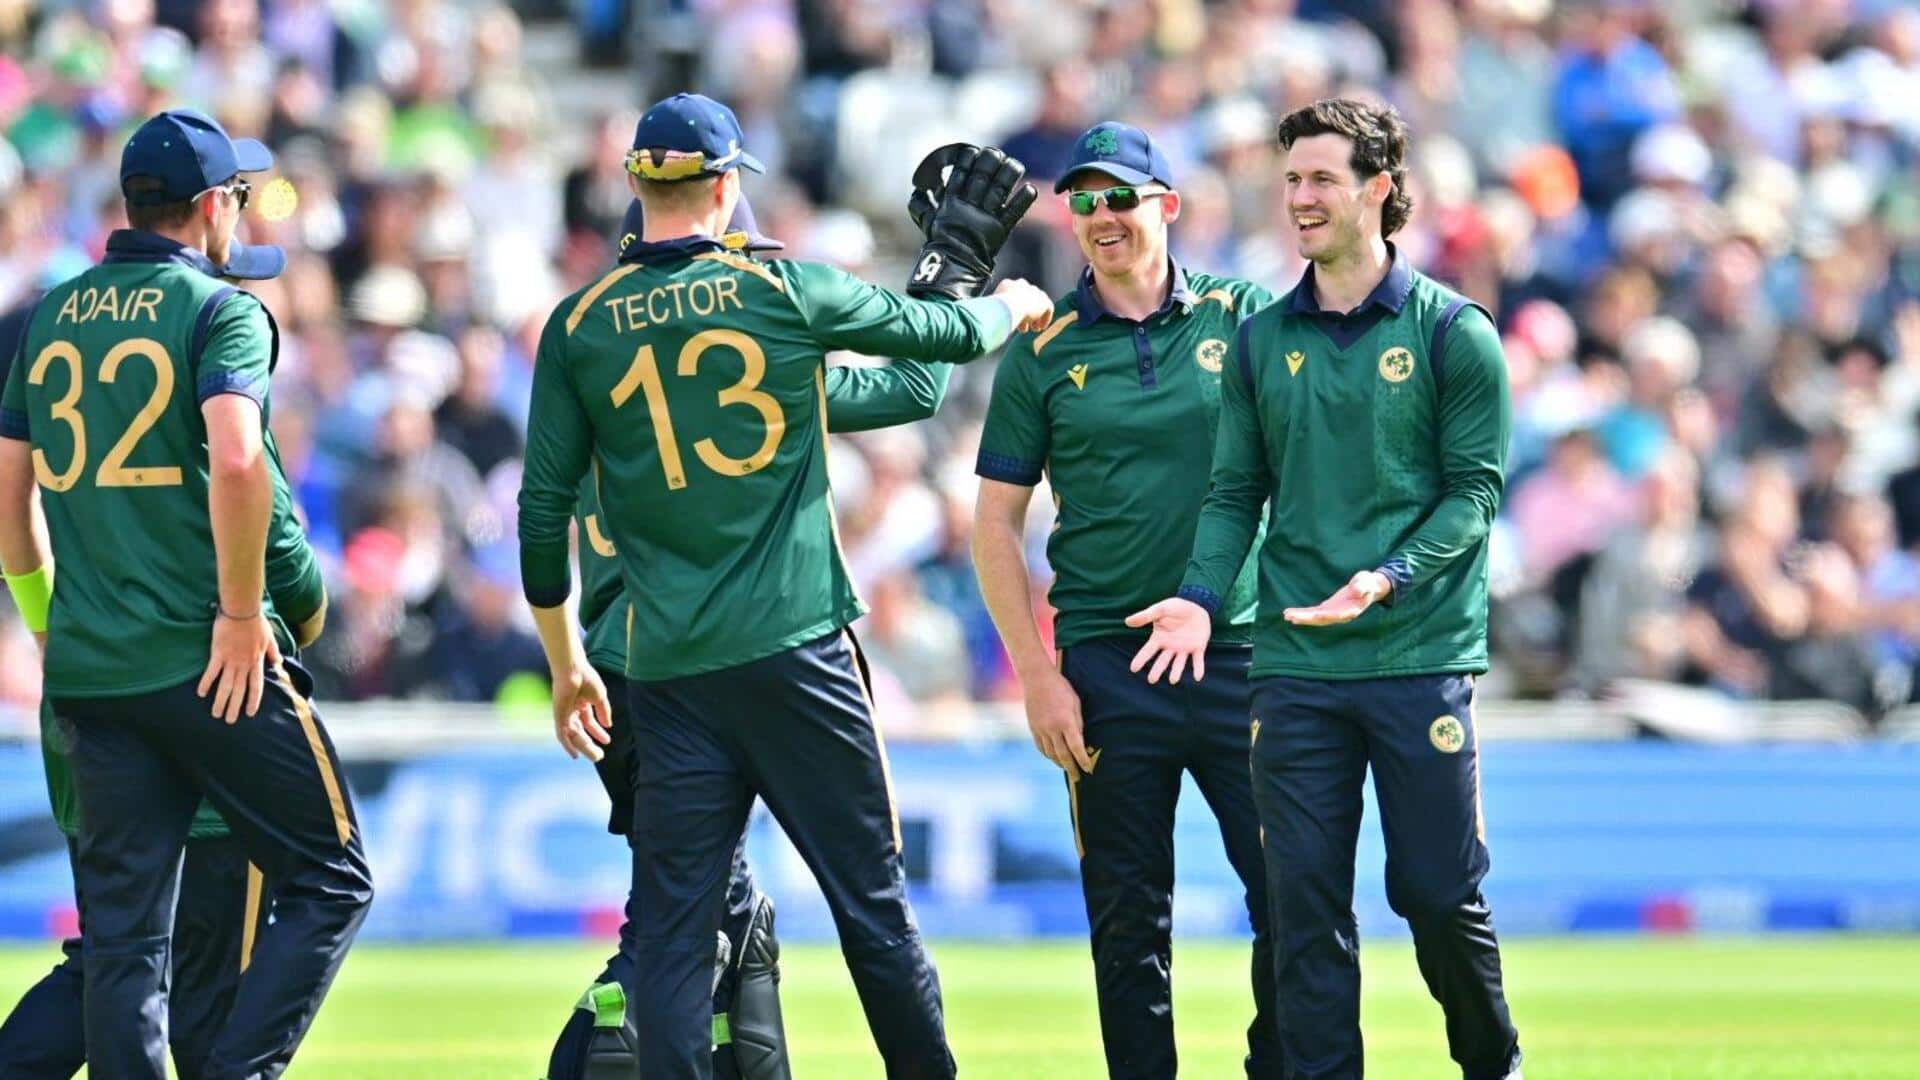 इंग्लैंड बनाम आयरलैंड: जॉर्ज डॉकरेल ने चटकाए 3 विकेट, जानिए उनके आंकड़े